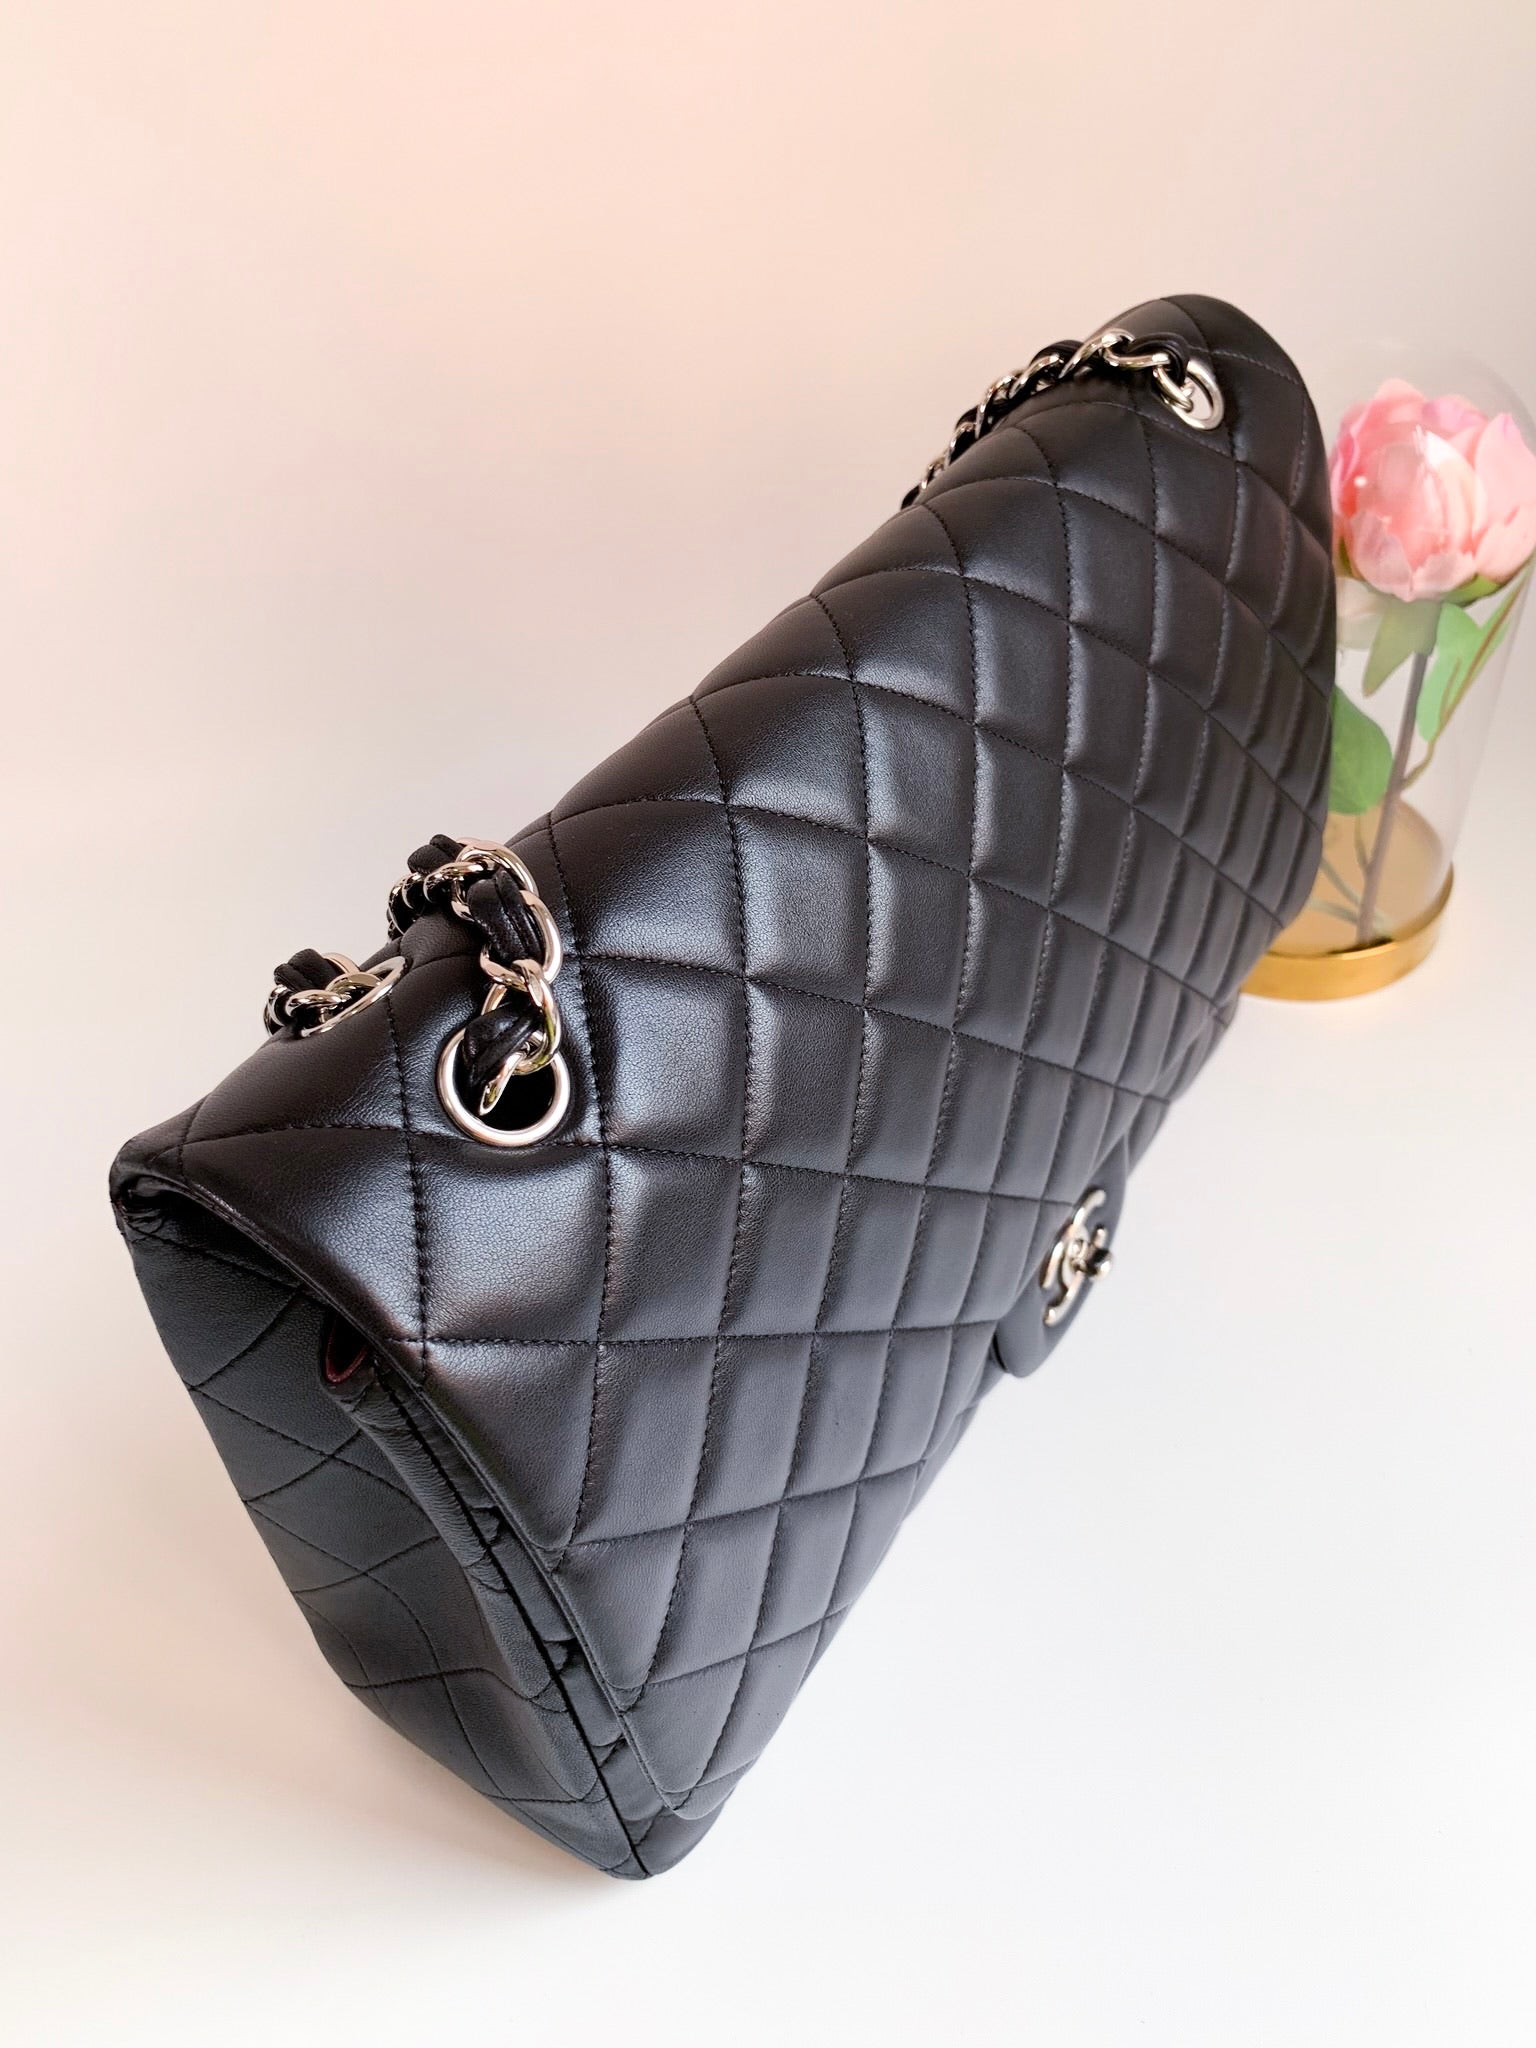 Chanel Single Flap Bag, Black Lambskin